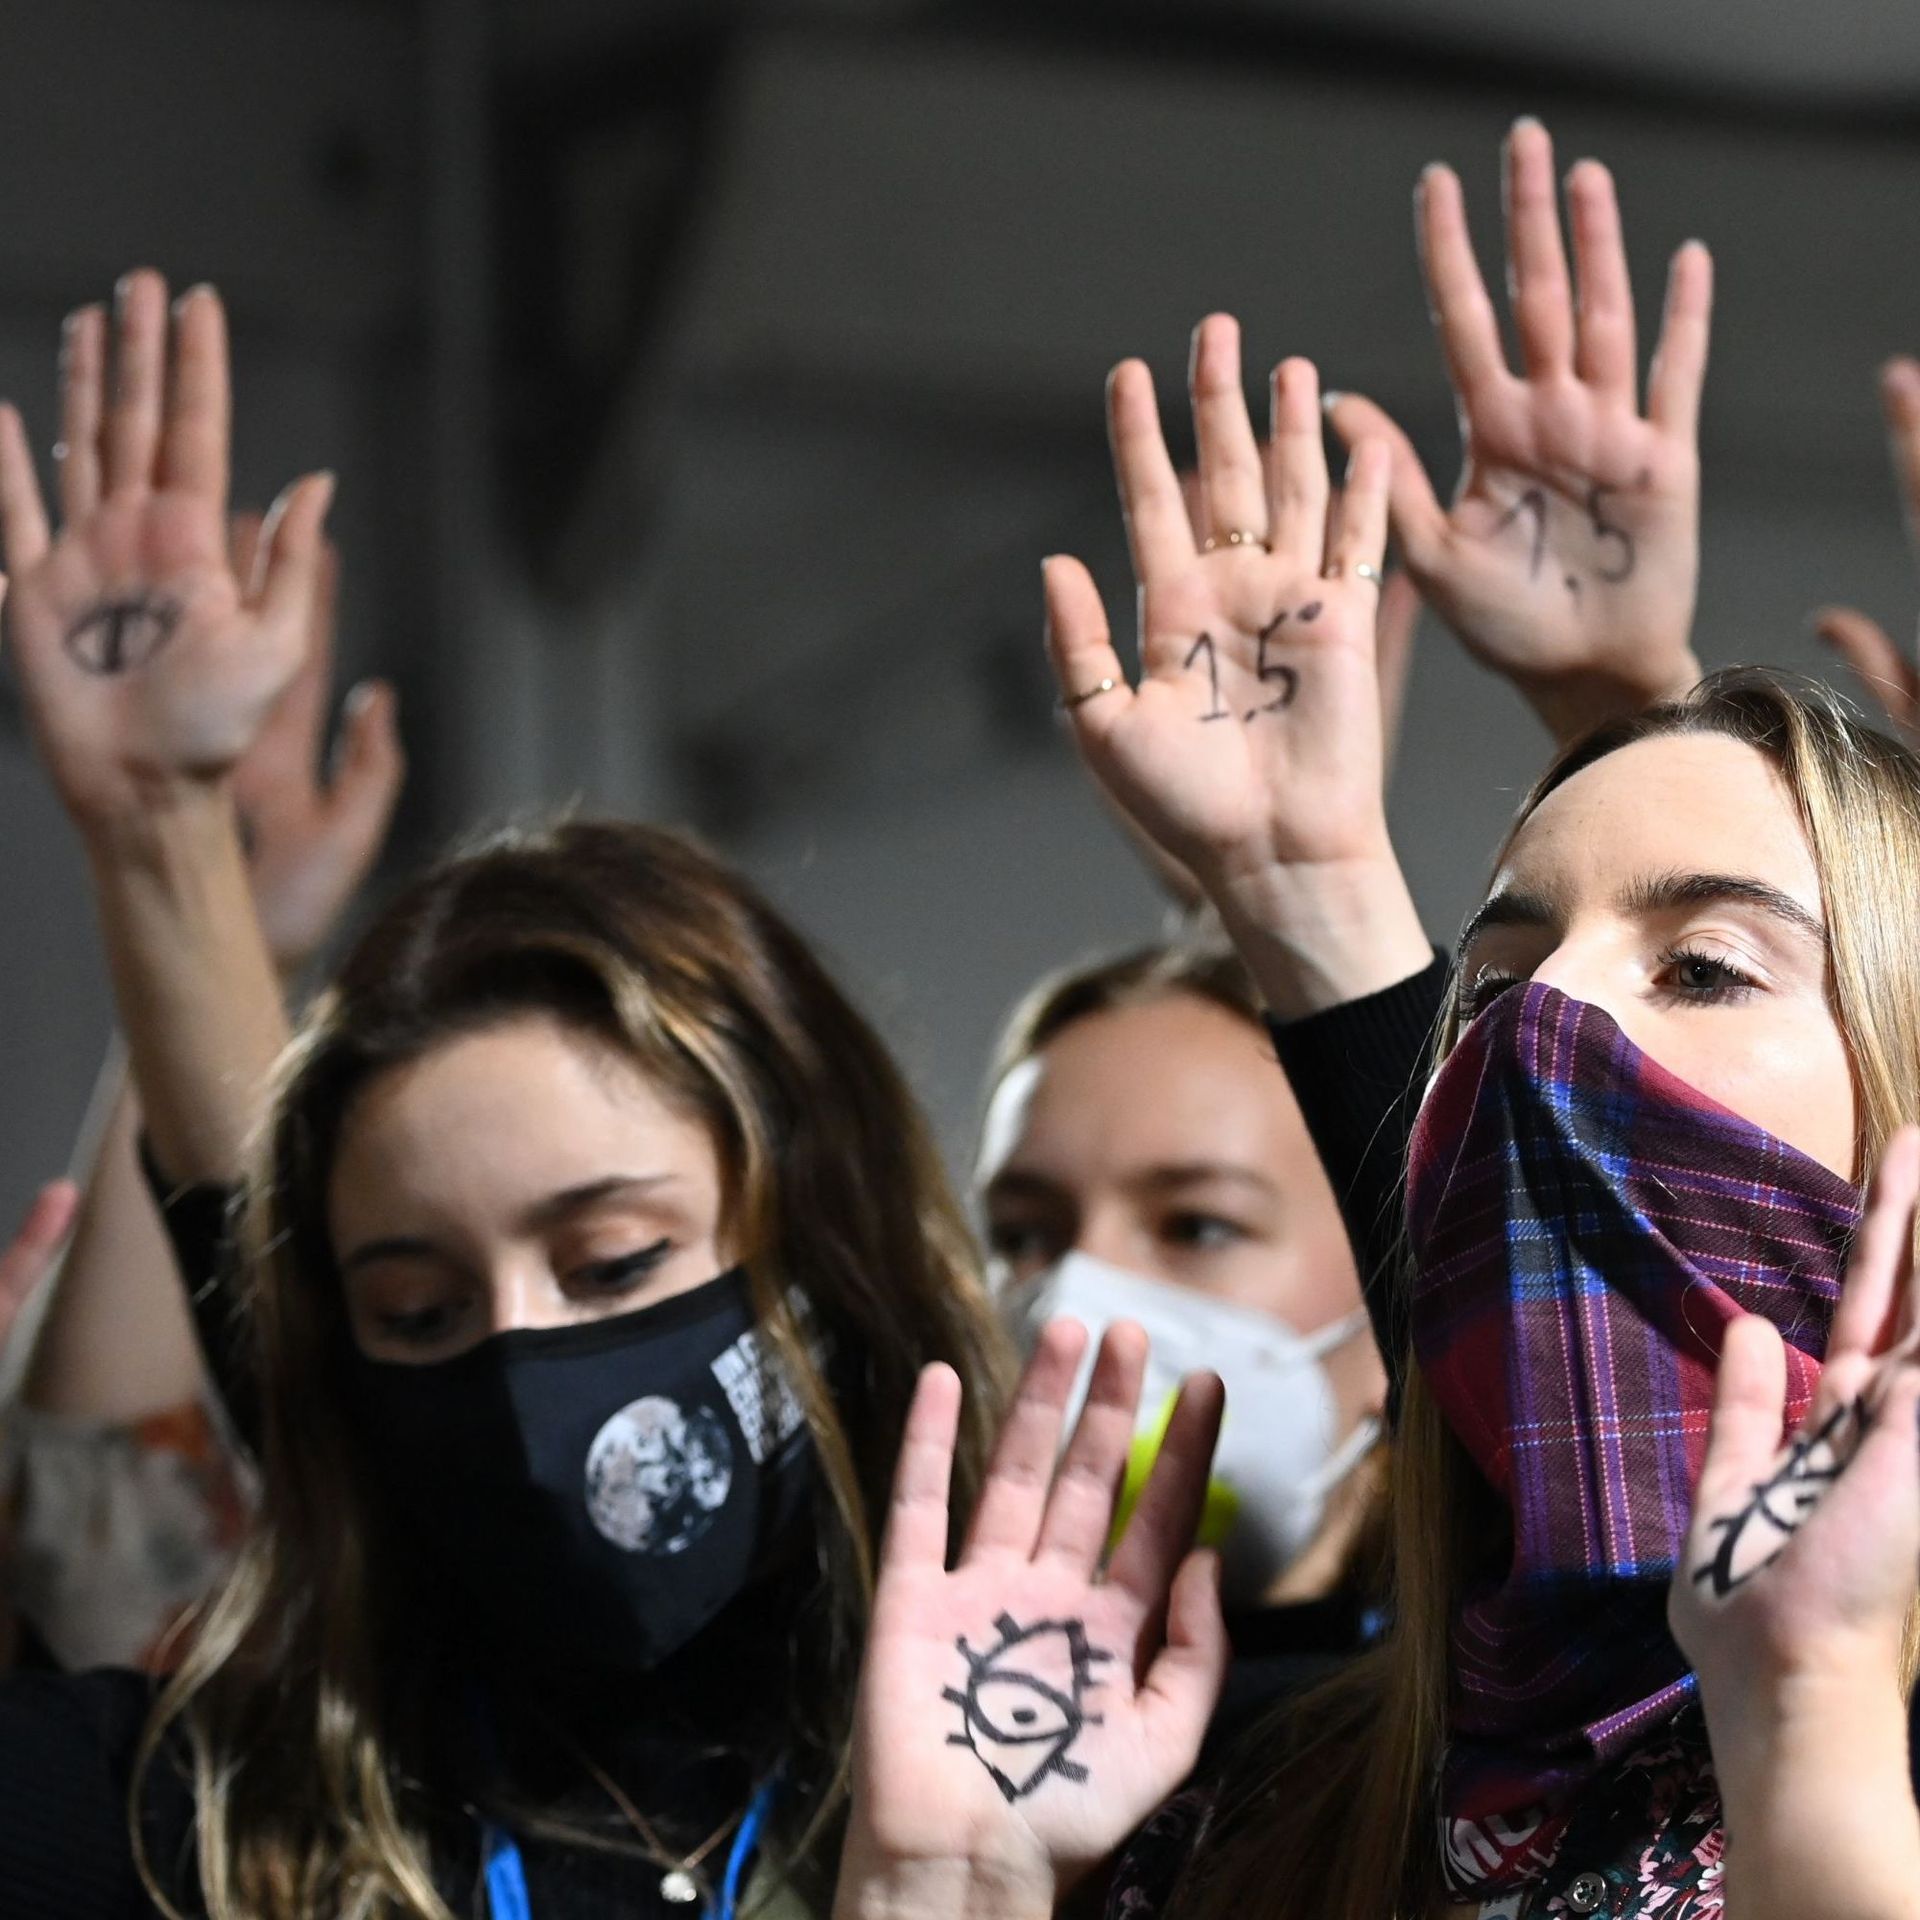 De jeunes militants pour le climat protestent contre les combustibles fossiles devant les salles plénières de la COP26 alors que les négociations de haut niveau se poursuivent entre les gouvernements du monde le 10 novembre 2021 à Glasgow, au Royaume-Uni.